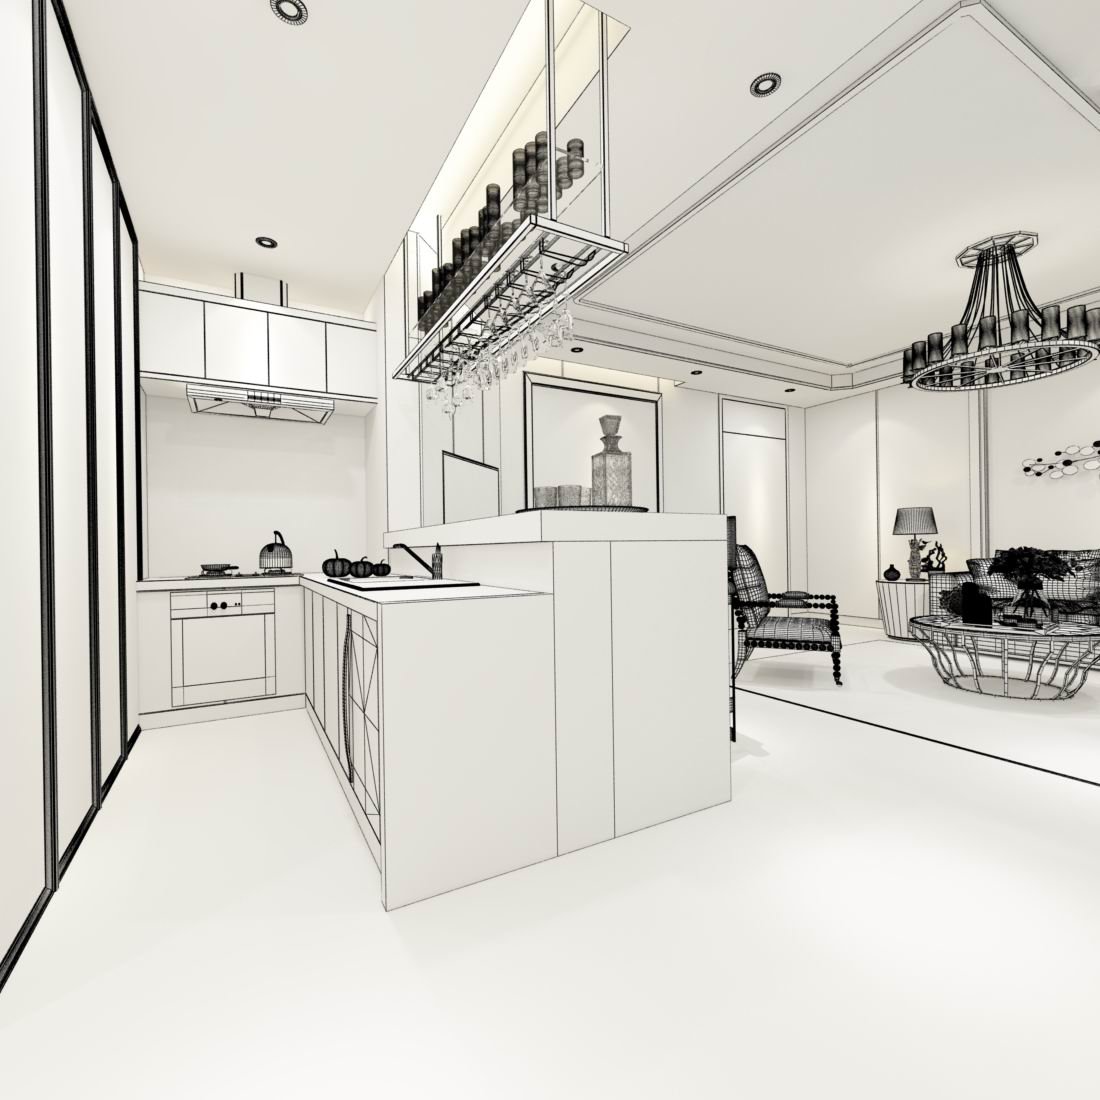 Minimalist Room Sleek 3d Render Of Black Kitchen With Modern